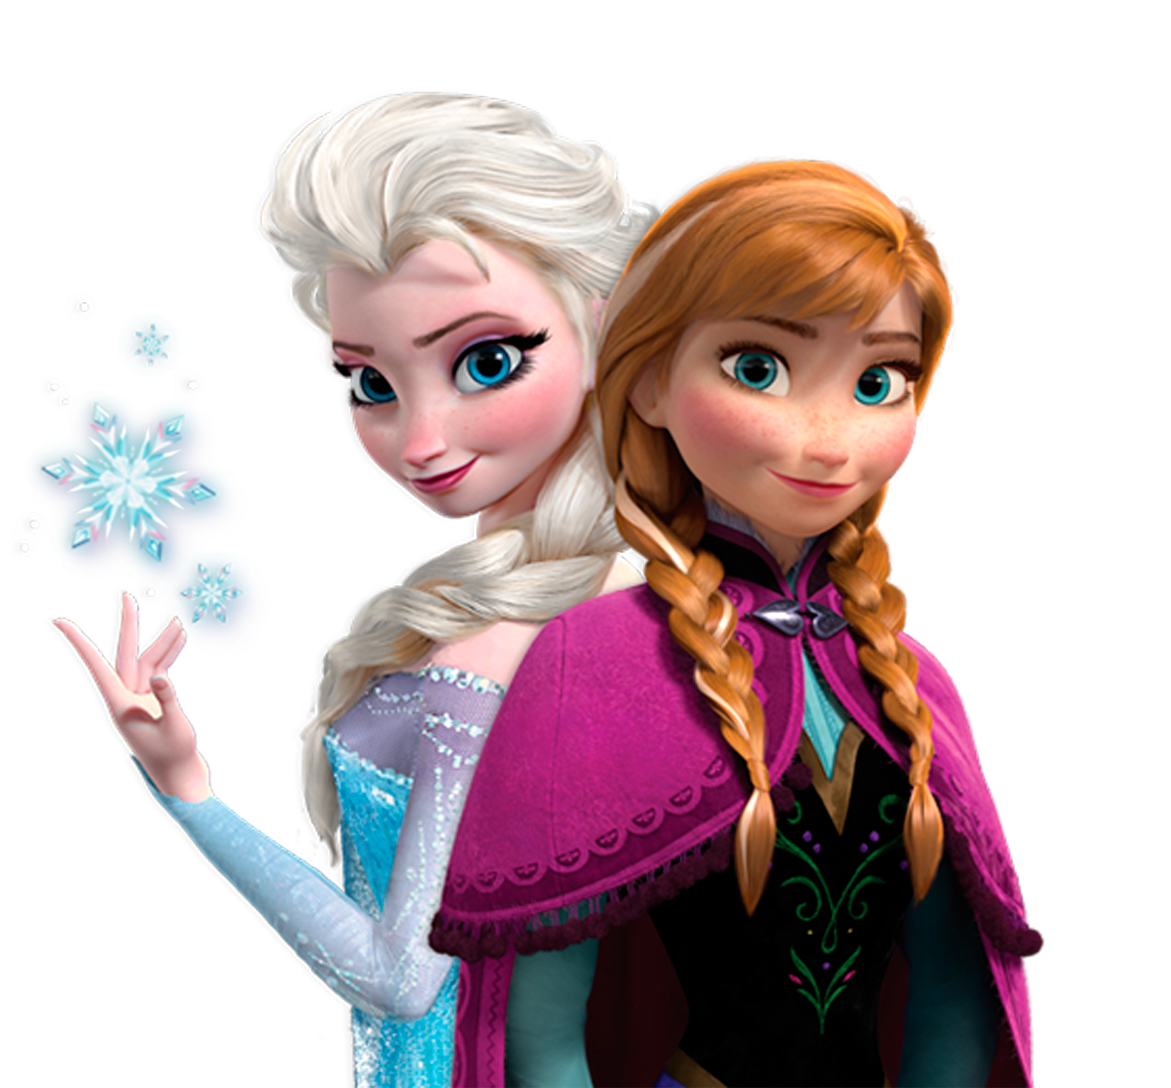 Download Kristoff Frozen Elsa Anna Olaf Disney HQ PNG Image ...